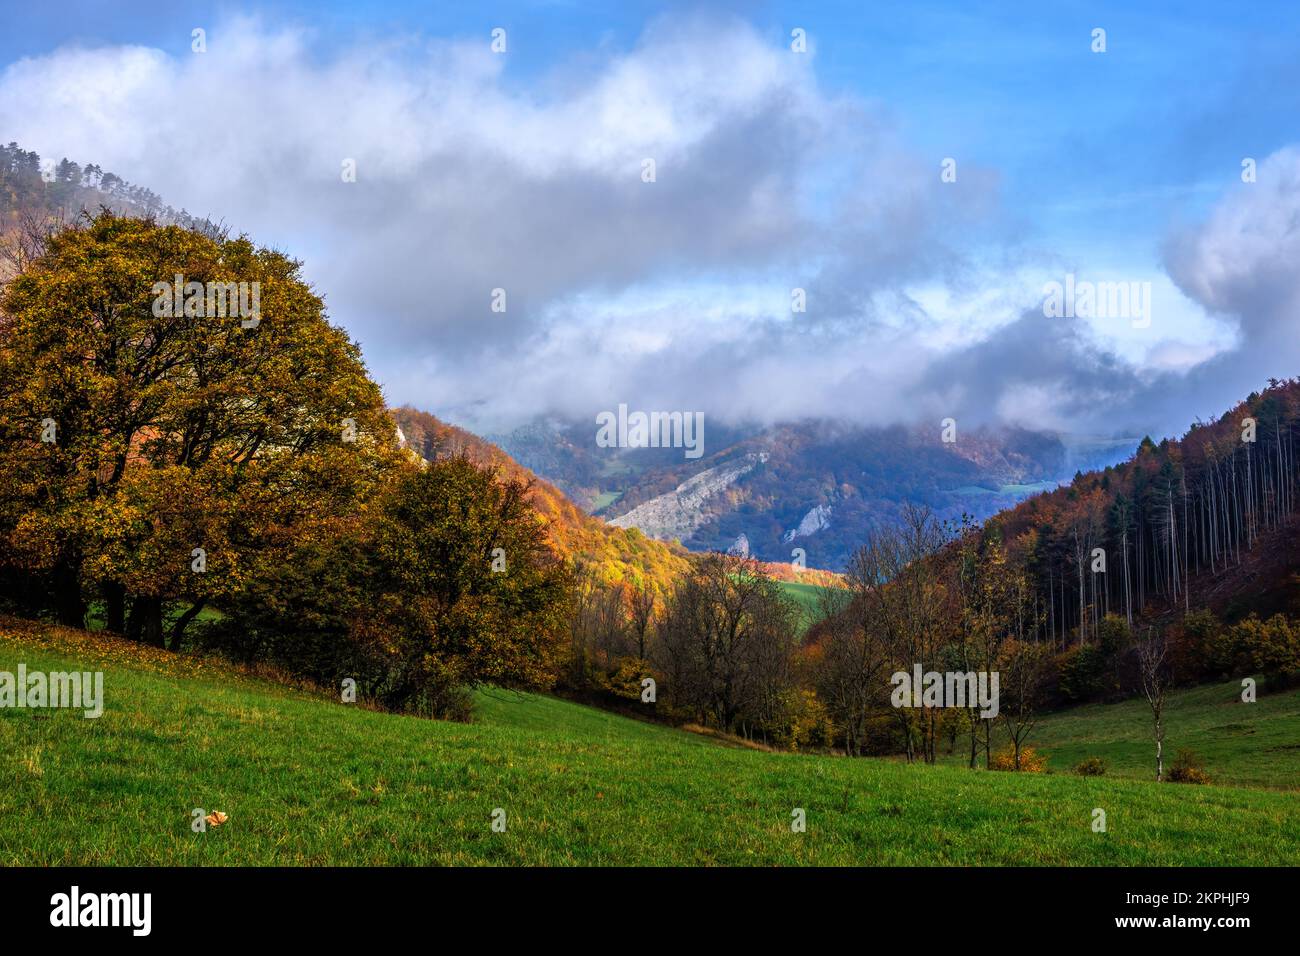 Neblige Herbstlandschaft mit Wald und Felsen. Blauer Himmel mit wunderschönen weißen Wolken. Blick auf das Tal. Vrsatec, Slowakei. Stockfoto